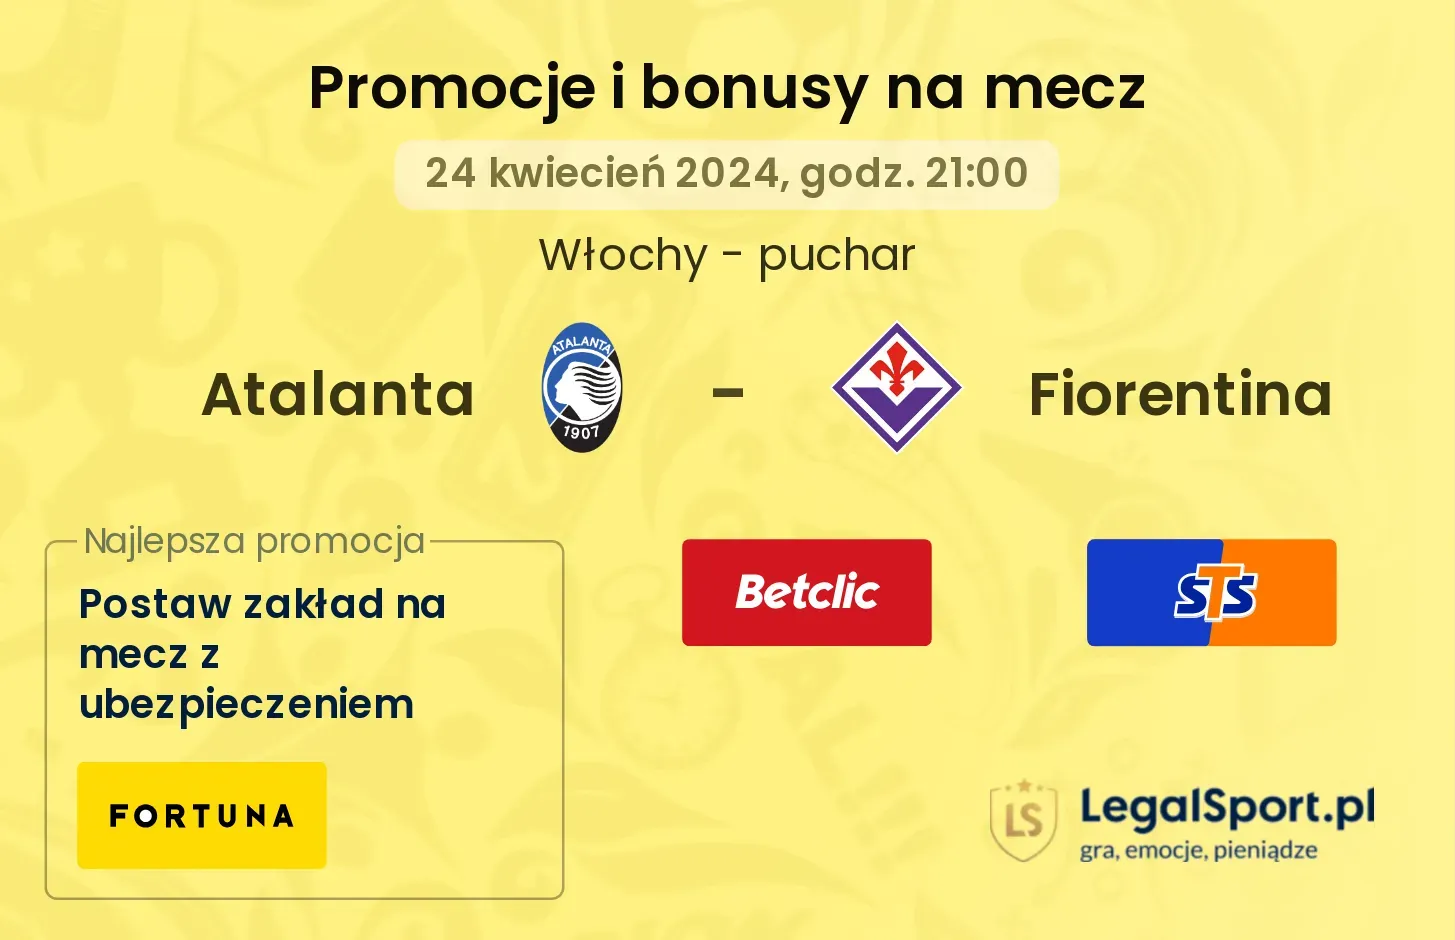 Atalanta - Fiorentina promocje bonusy na mecz